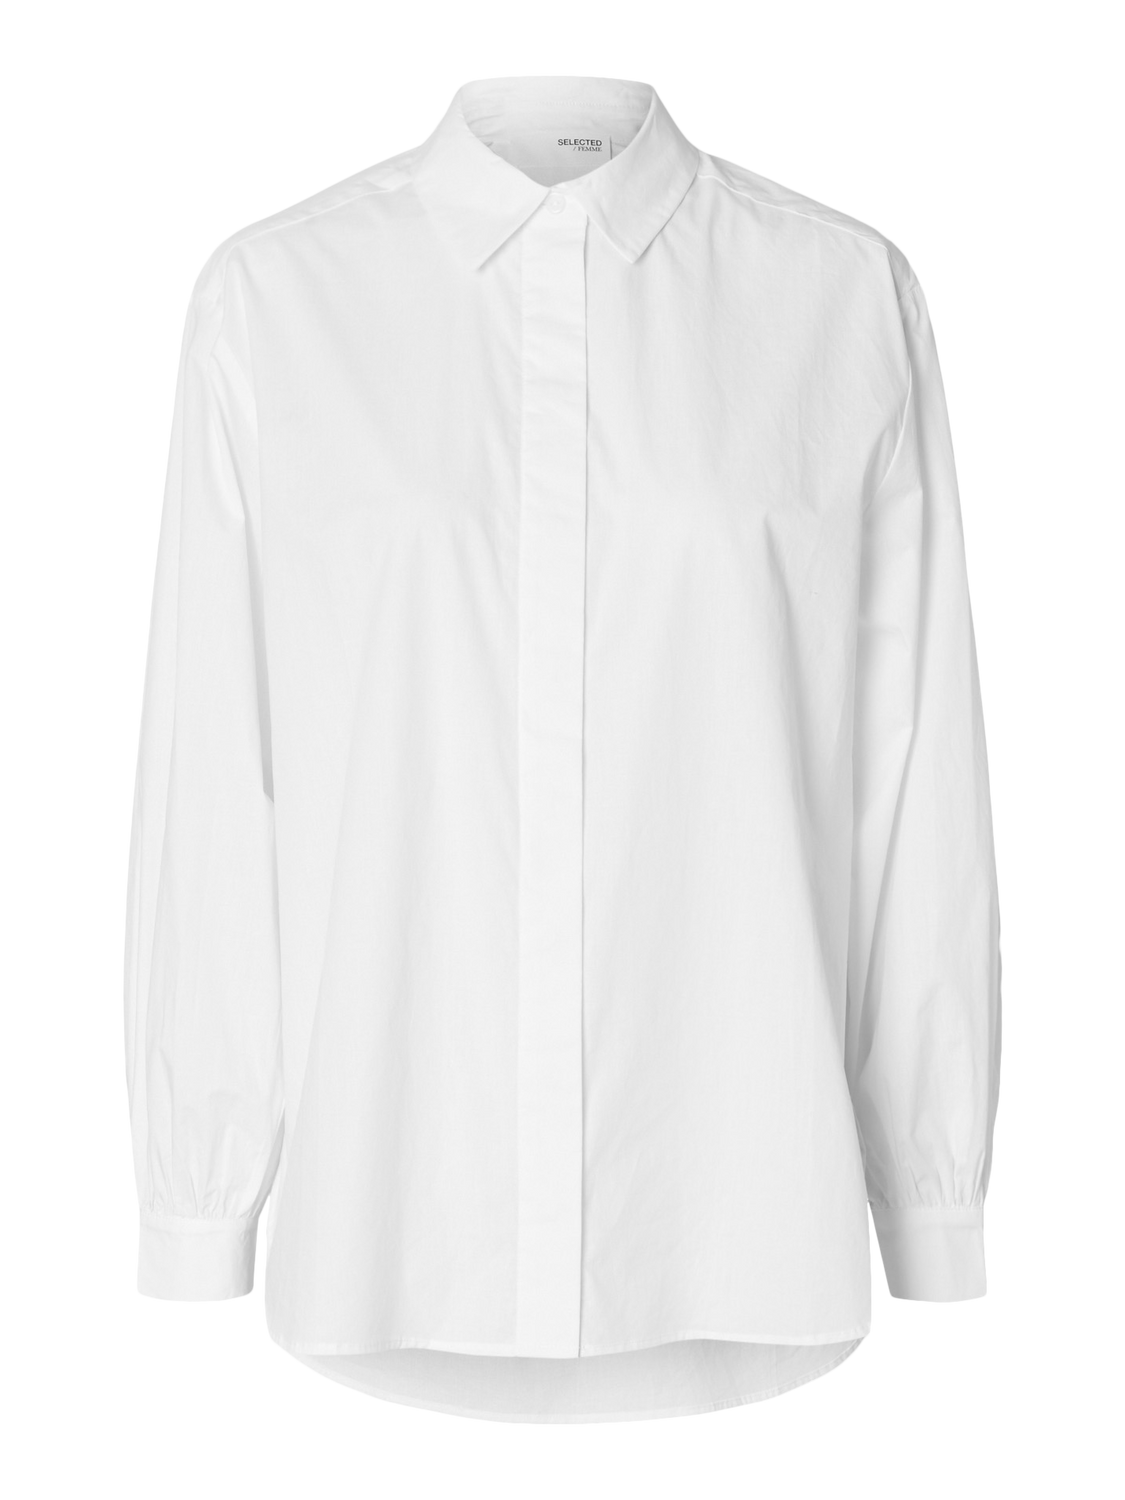 SLFHELEN Shirts - Bright White